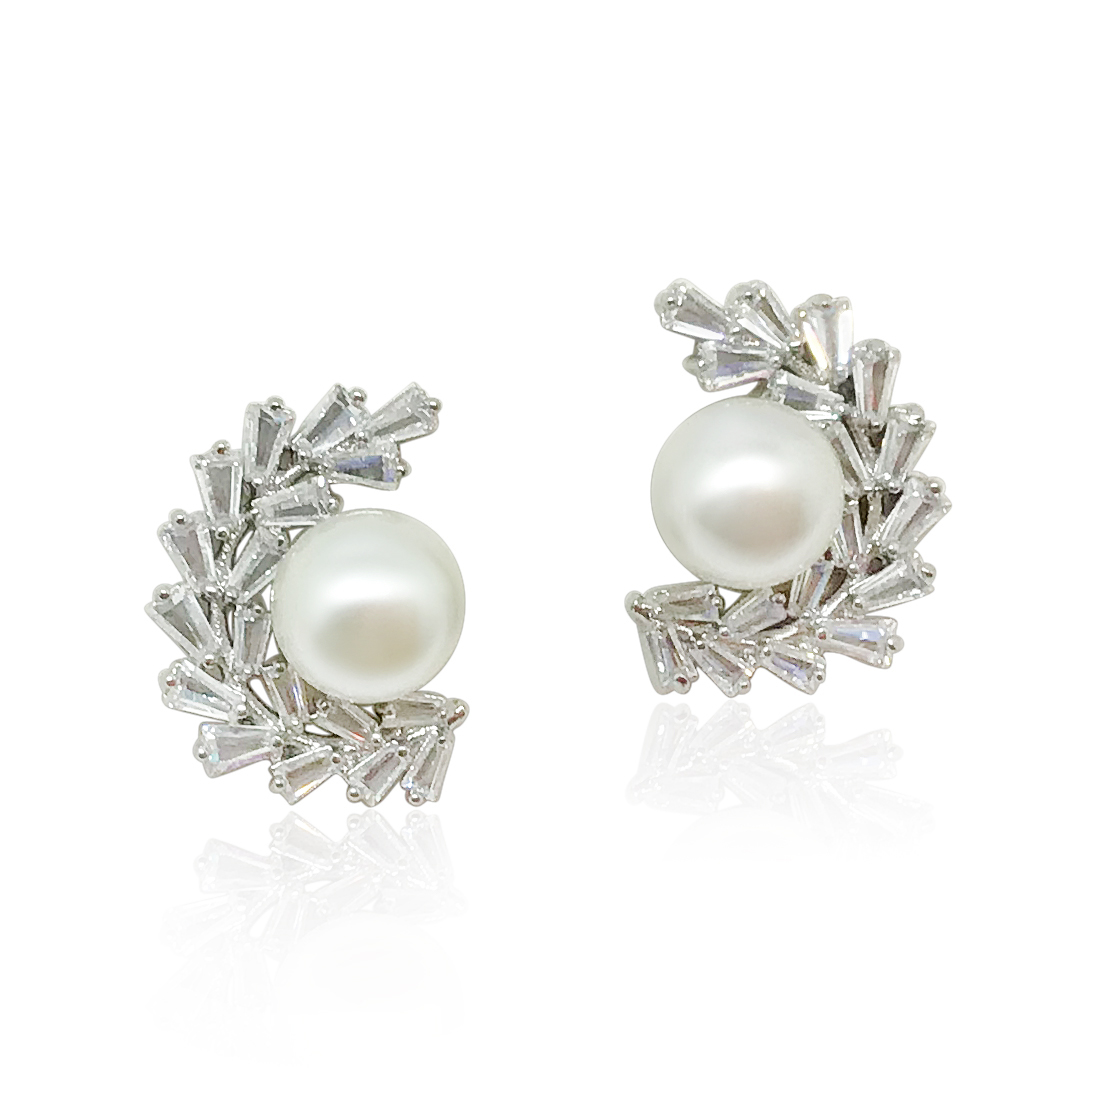 Pearl silver earrings|Rowan|Jeanette Maree|Shop Online Now